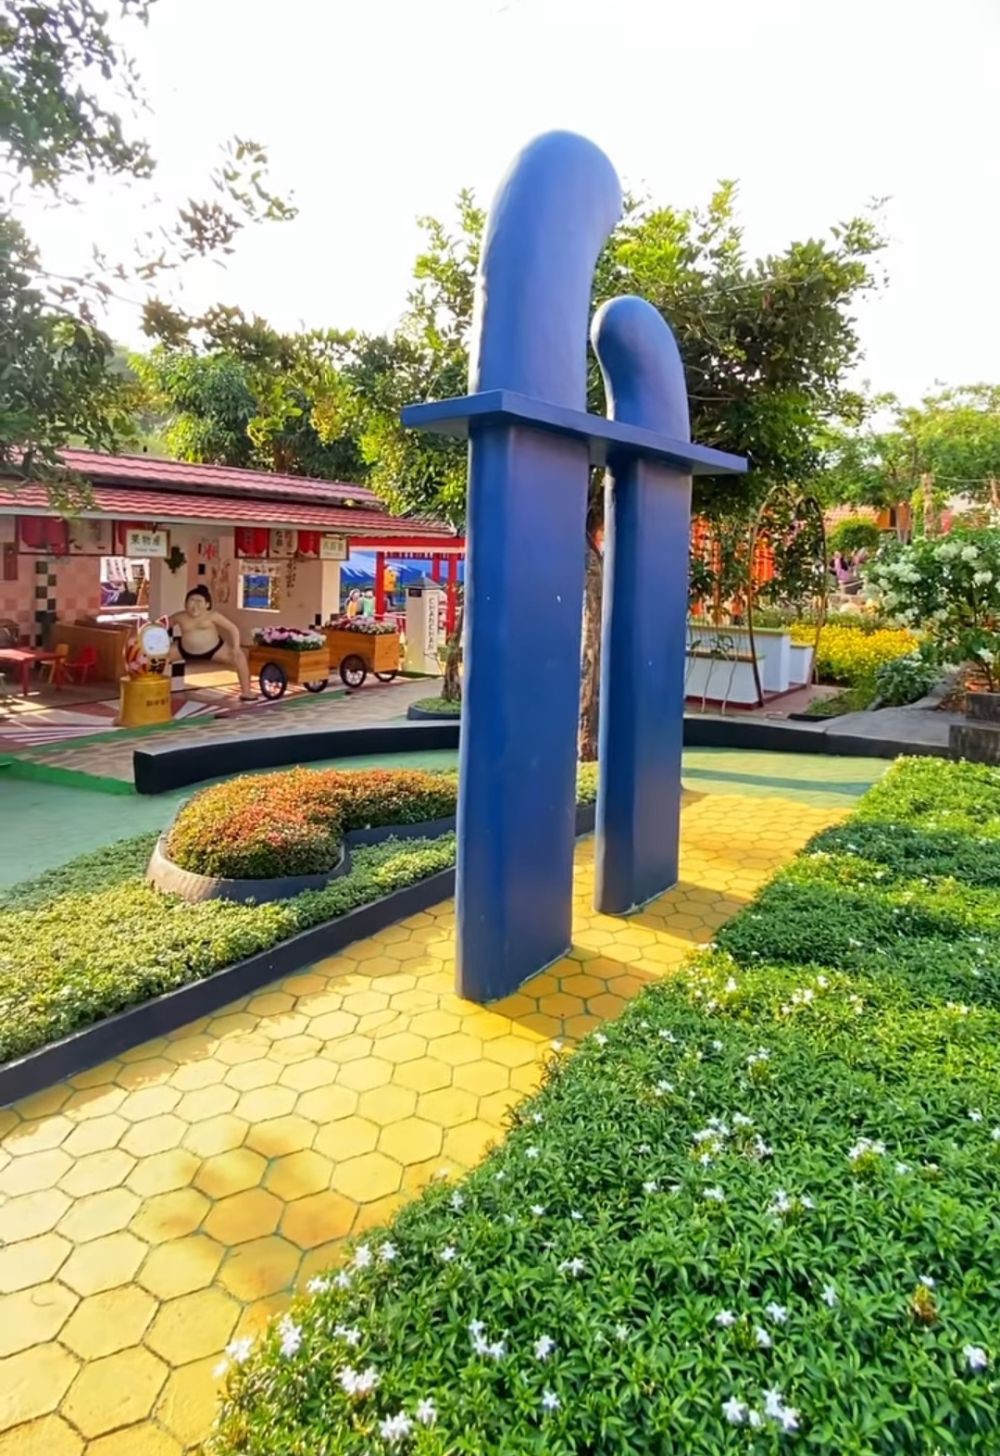 Taman Jepang Ikonik di Bandar Lampung, Wibu Wajib Tahu